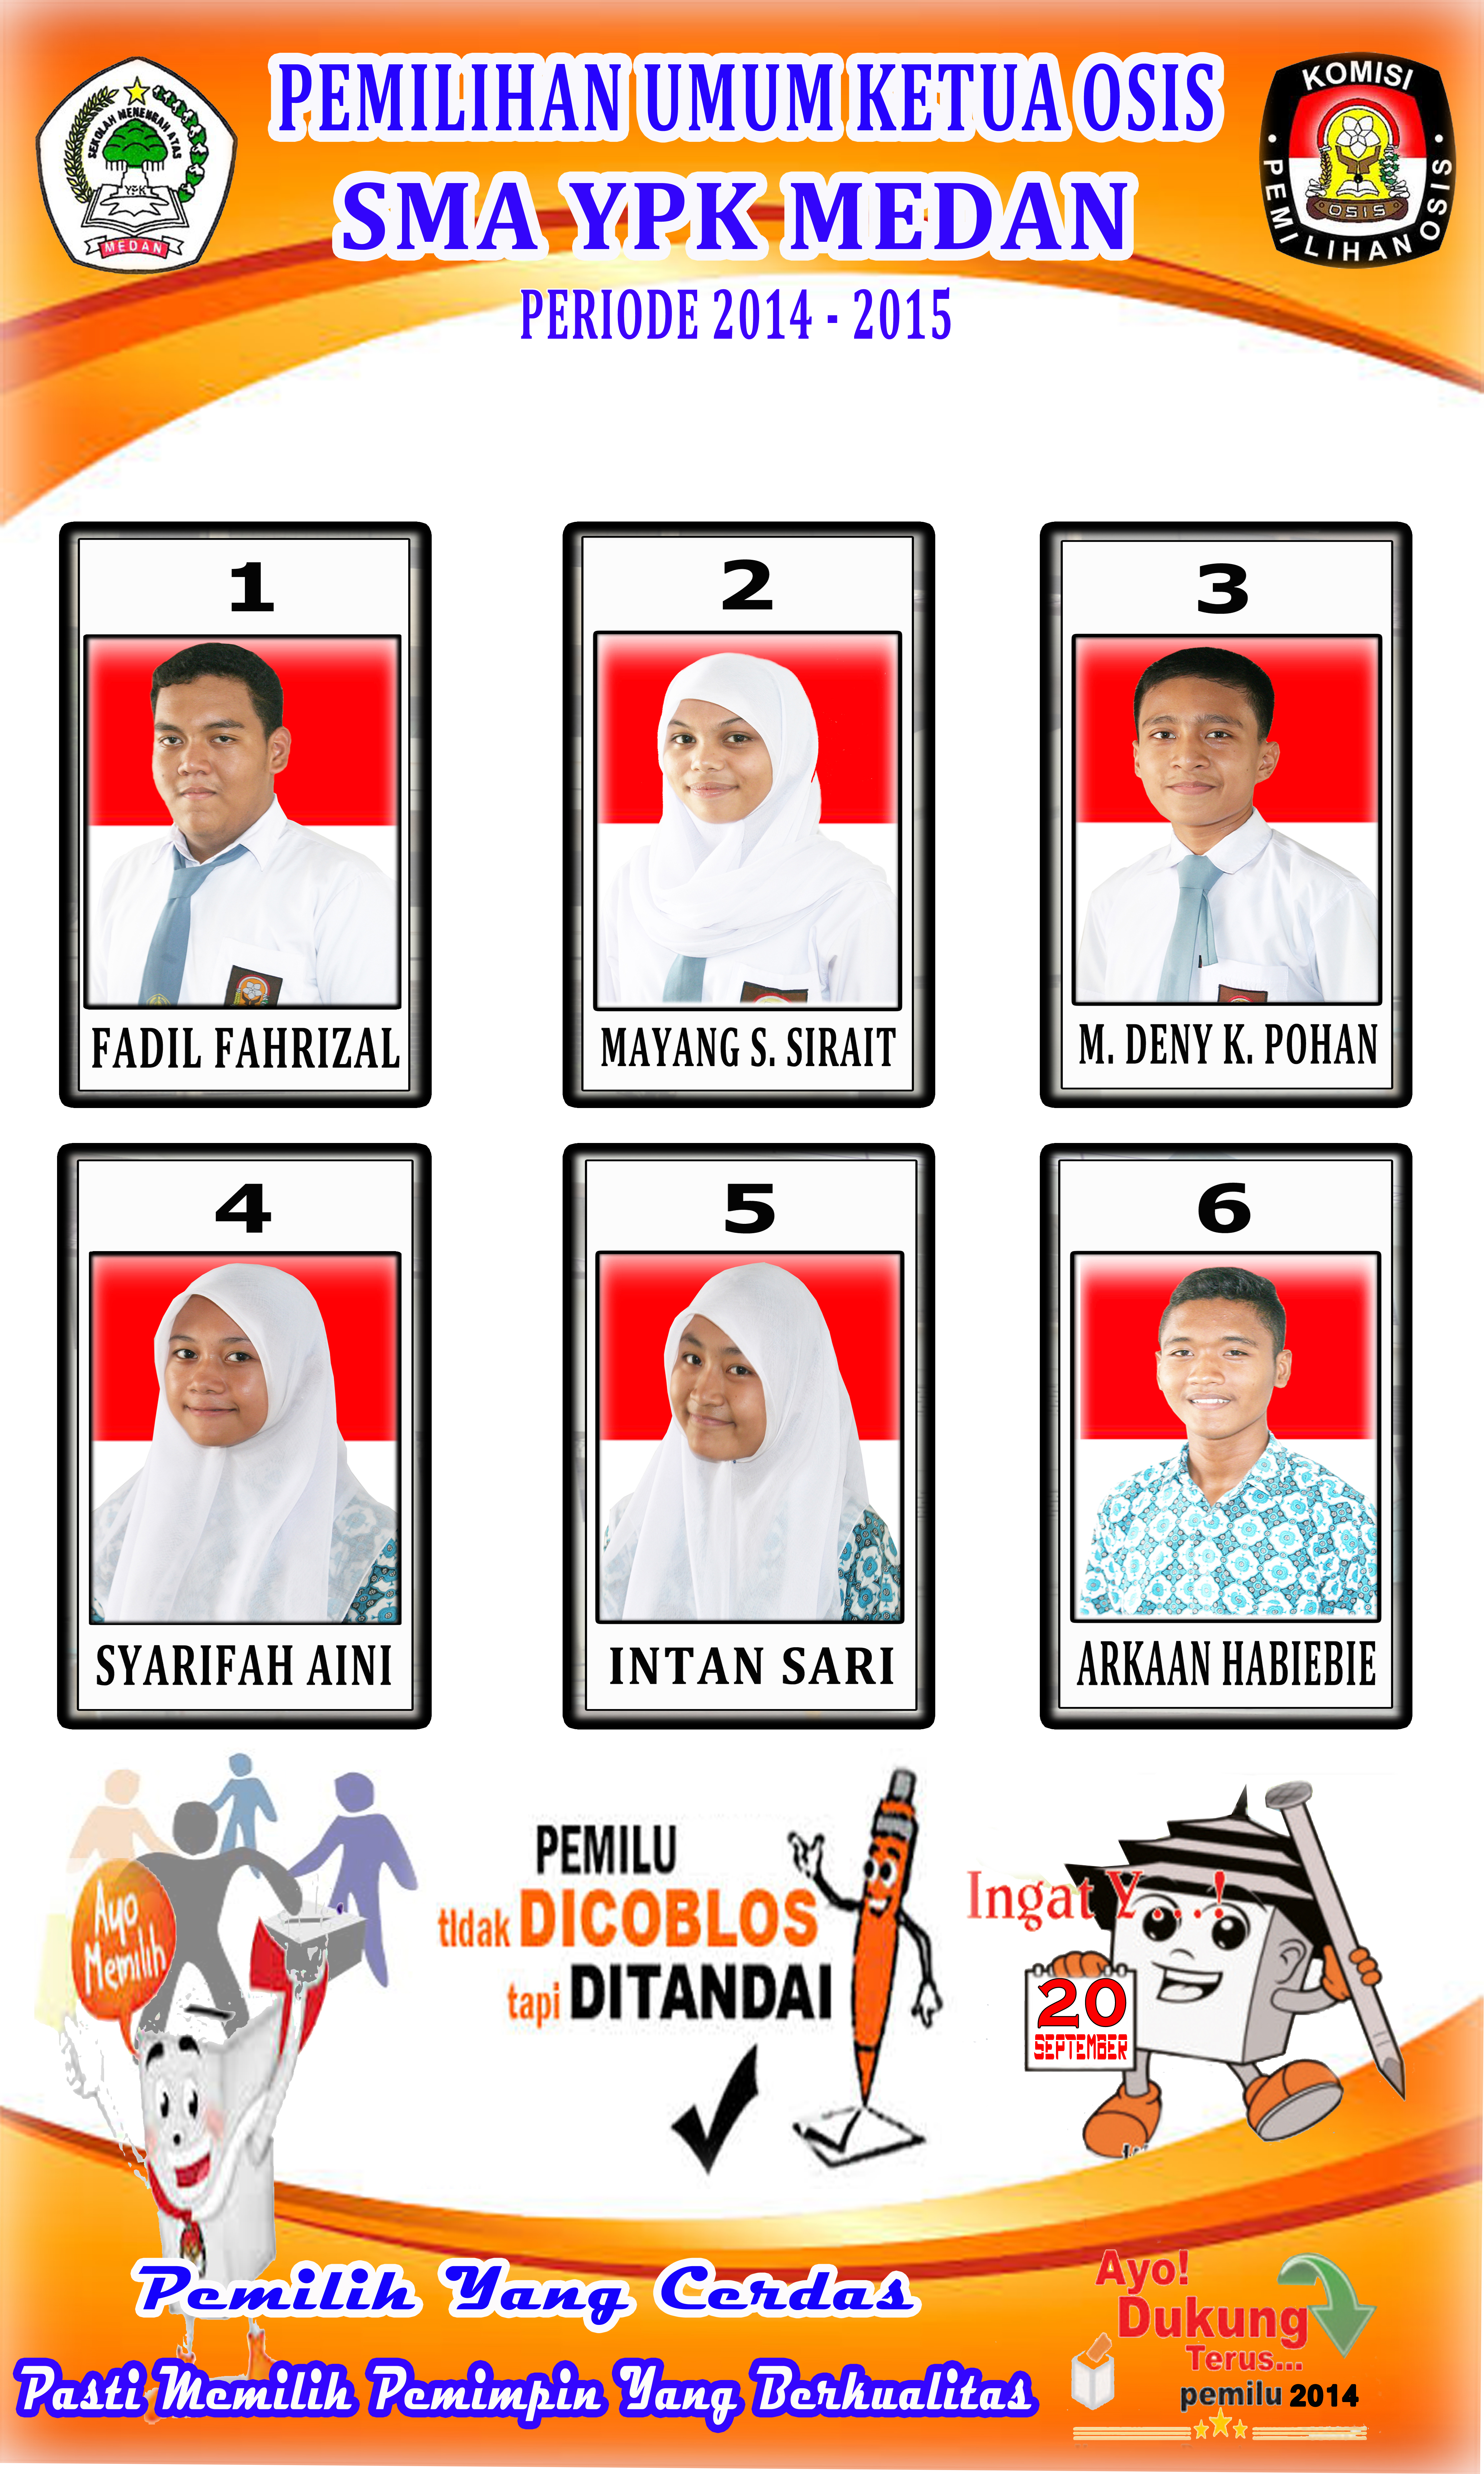 Pemilihan Ketua Osis Sma Ypk Medan Periode 2014 2015 Hr